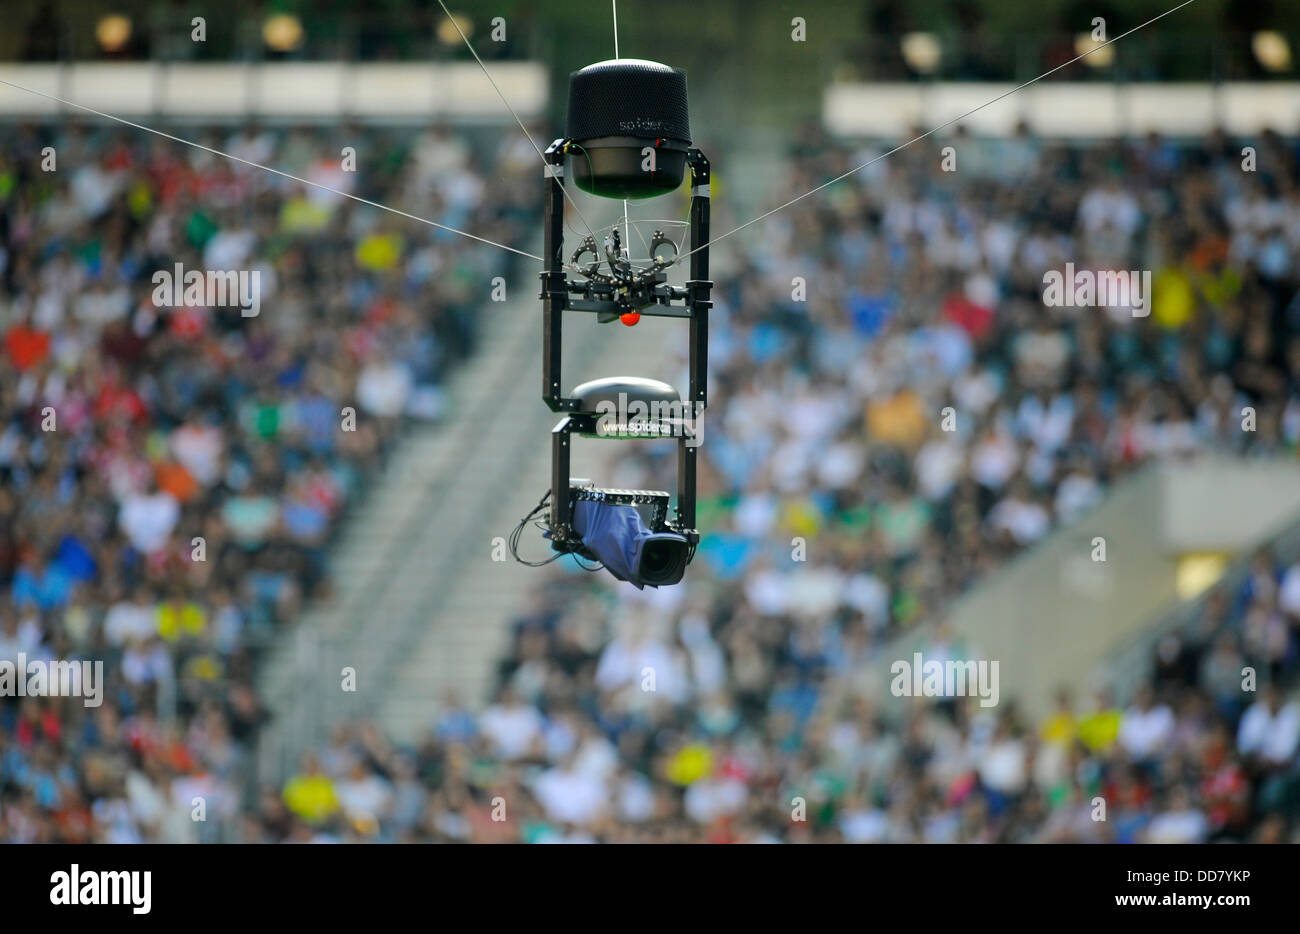 TV spidercam in sports stadium Stock Photo